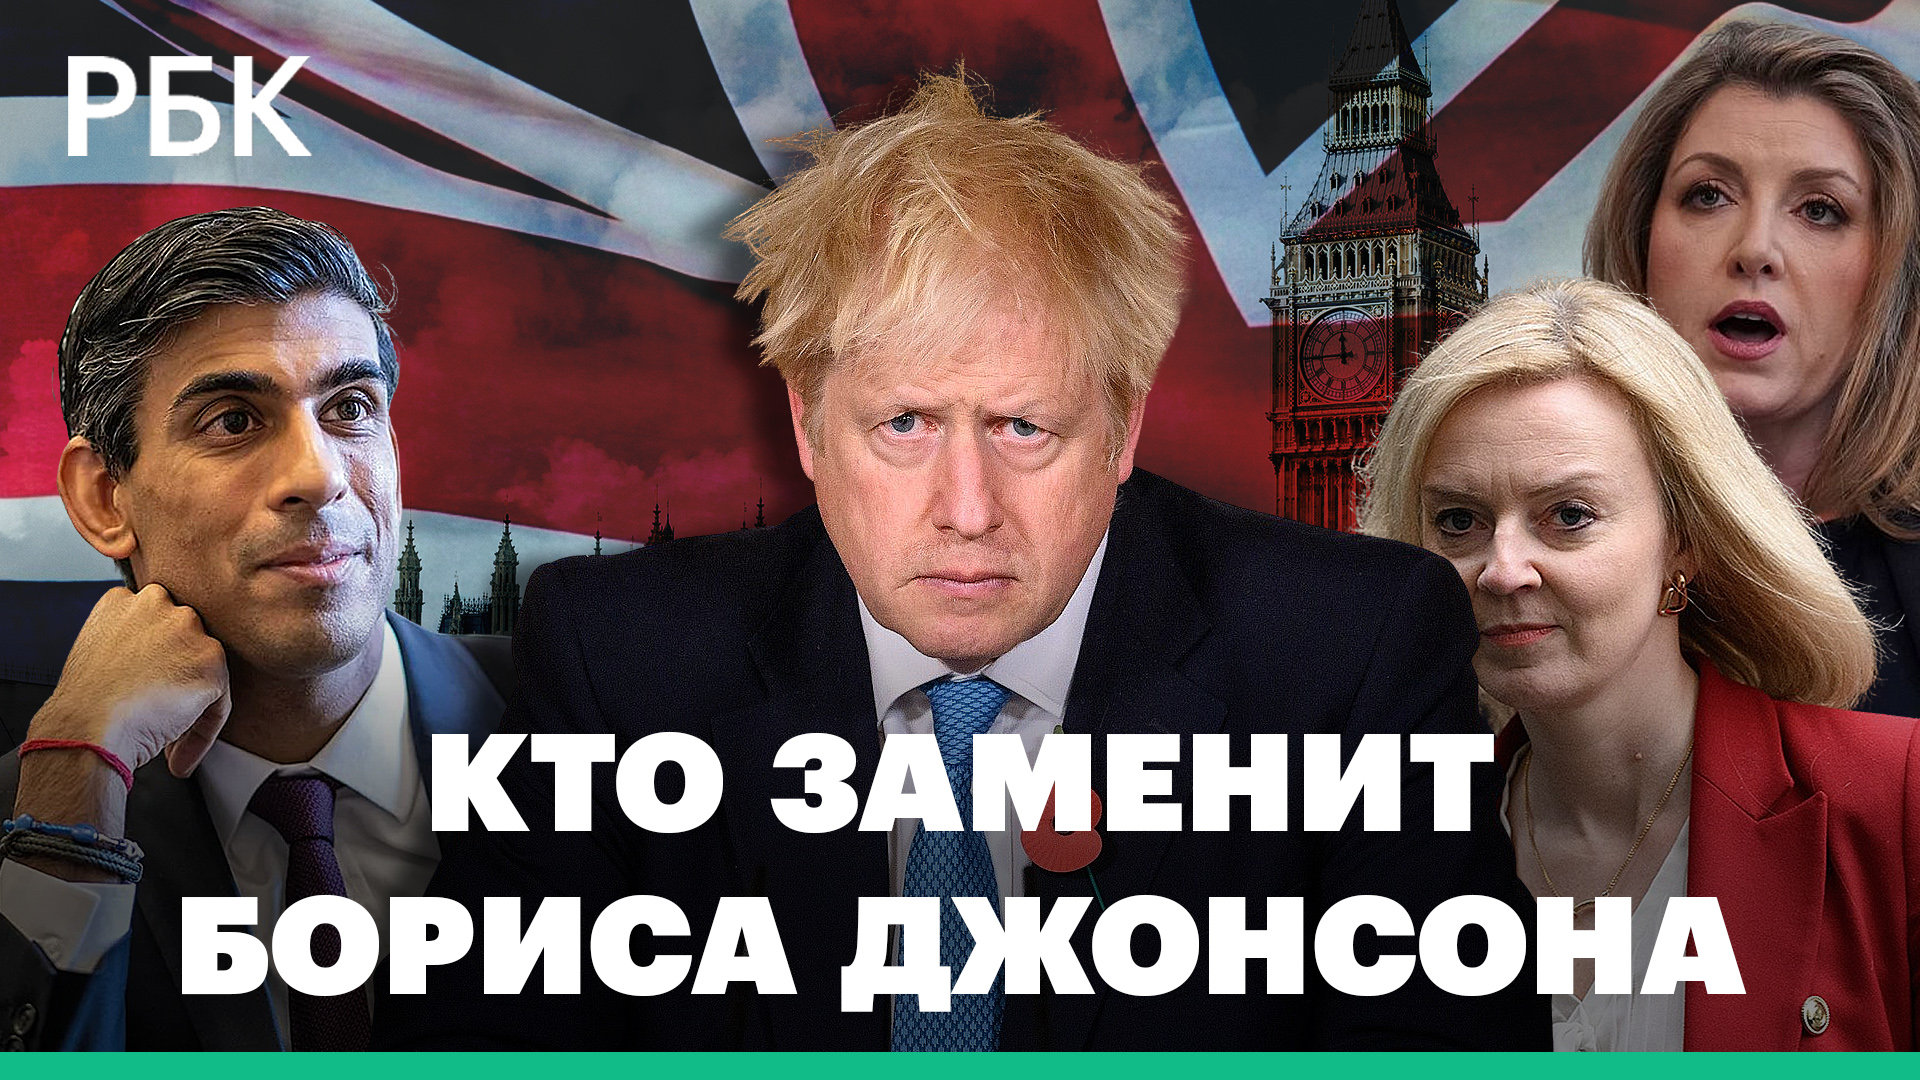 Три кандидата на пост премьера Великобритании — каковы их шансы и кто готов на диалог с Россией